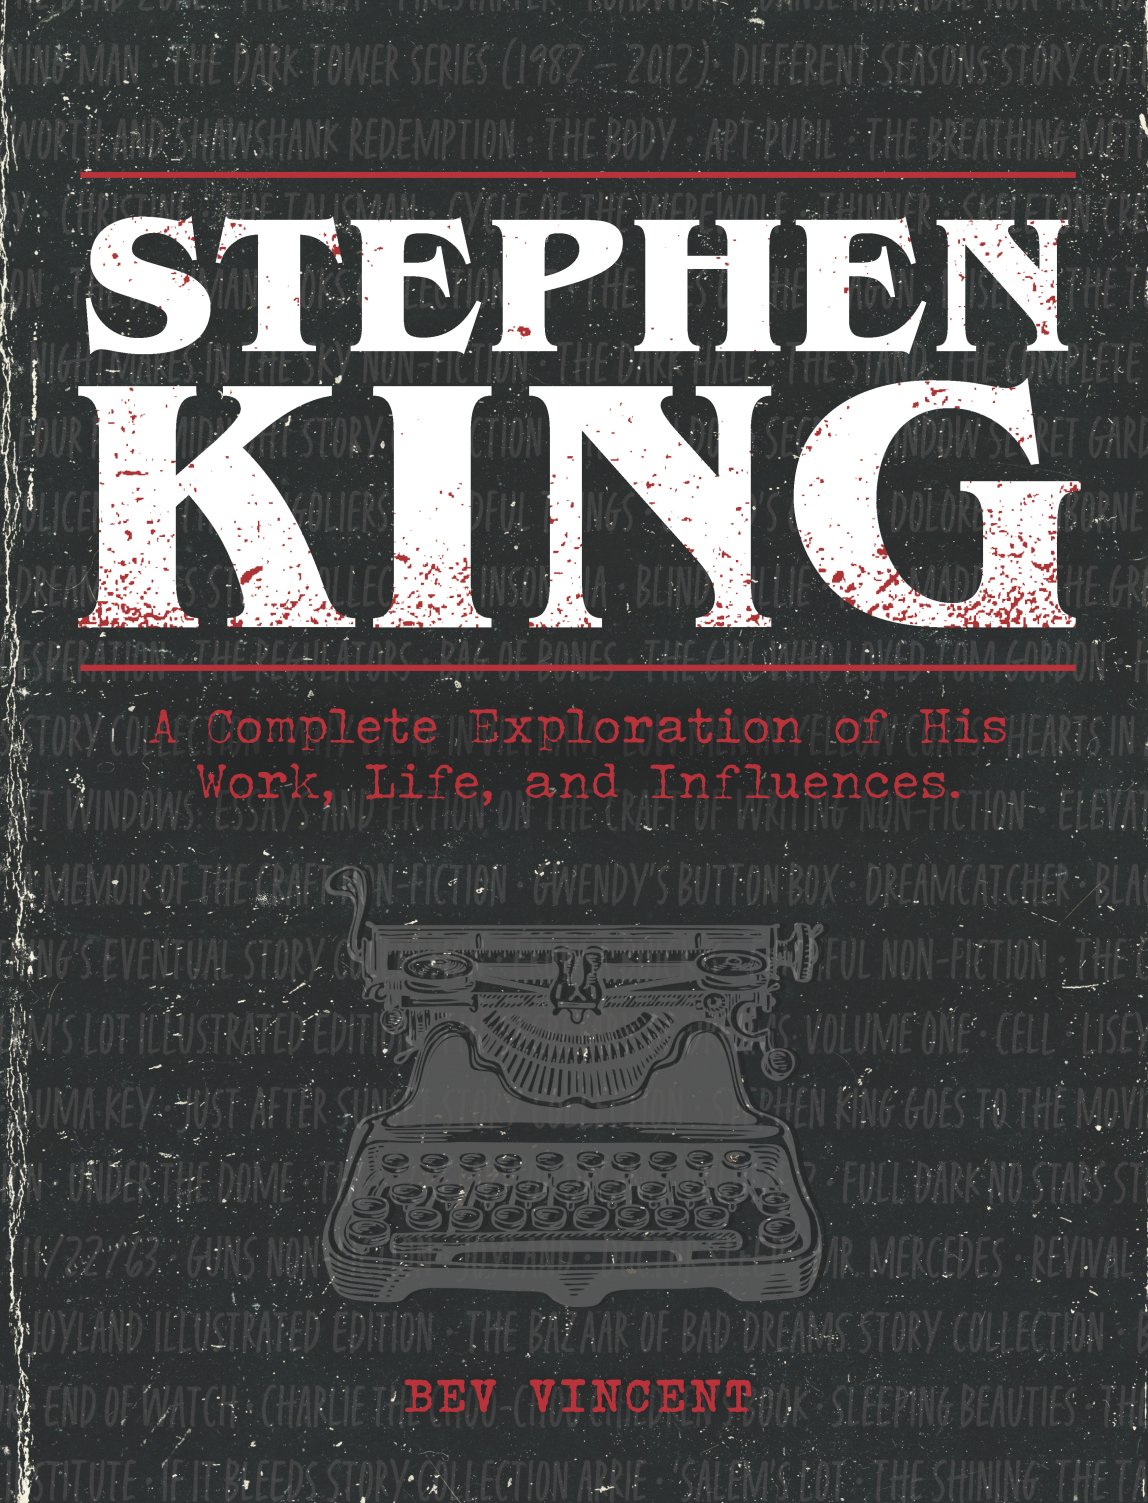 King of Horror: Stephen King prepares to release new novel